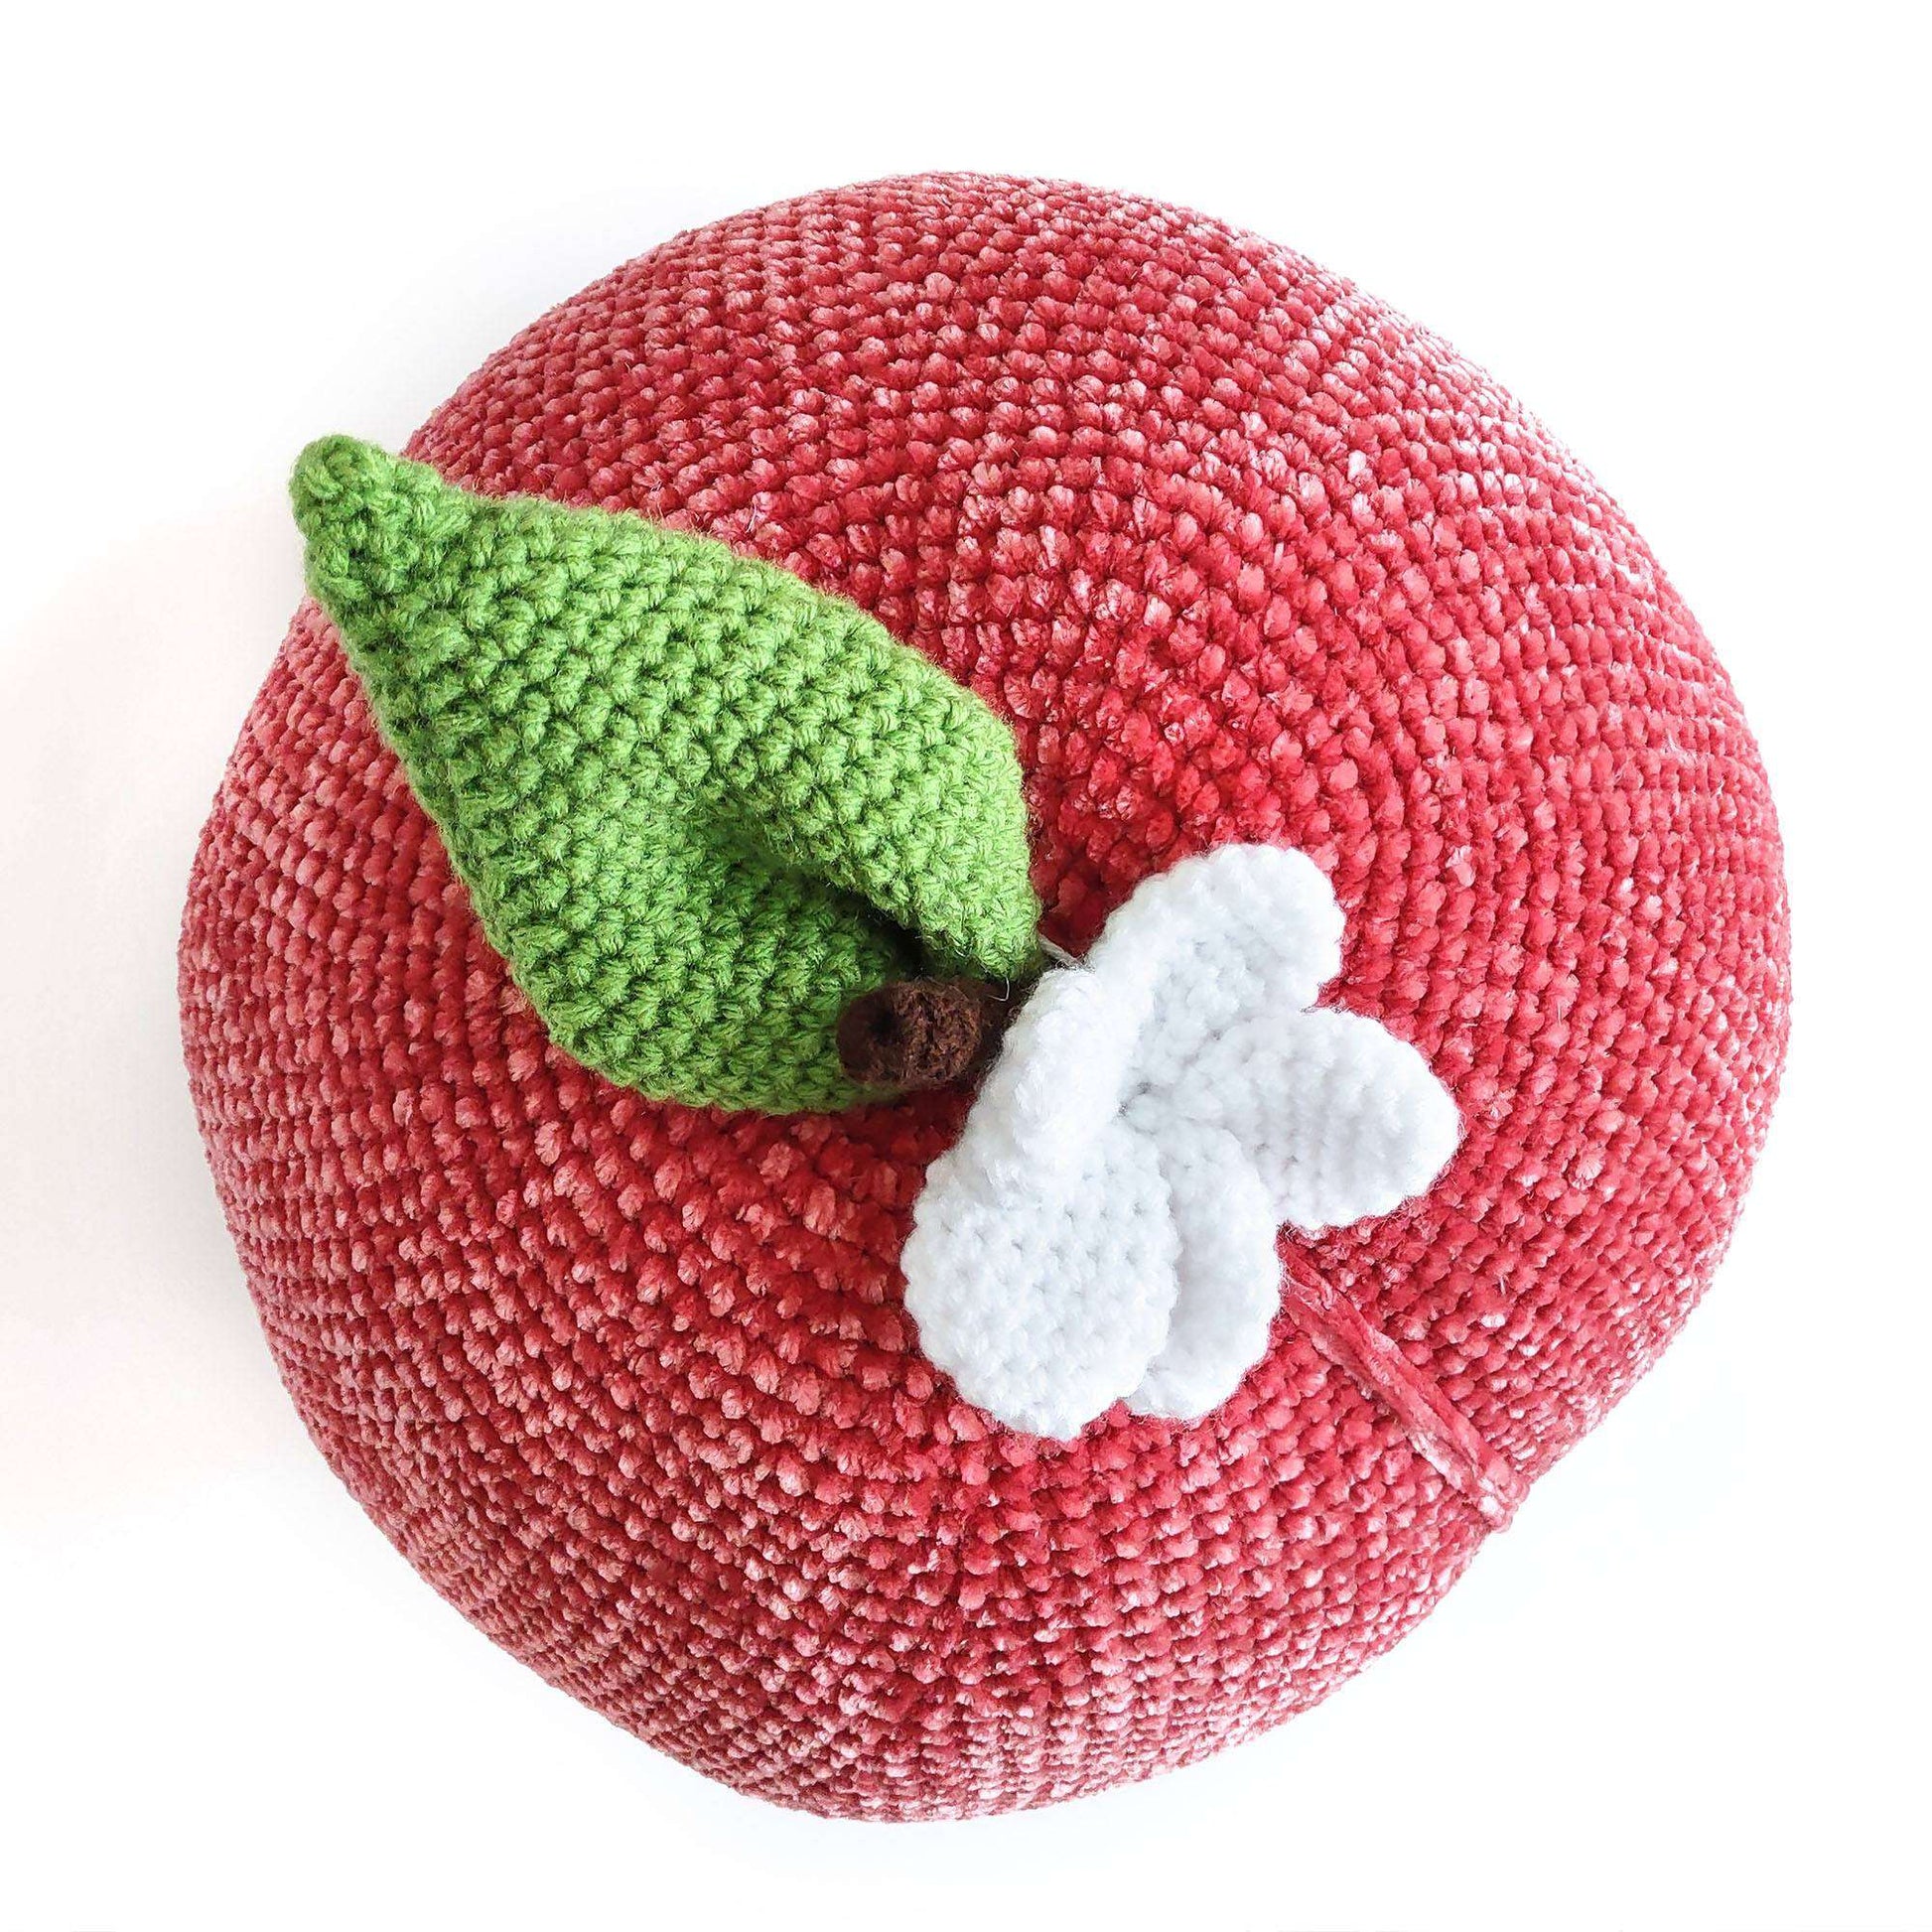 Free Bernat Peachy Pillow Crochet Amigurumi Pattern